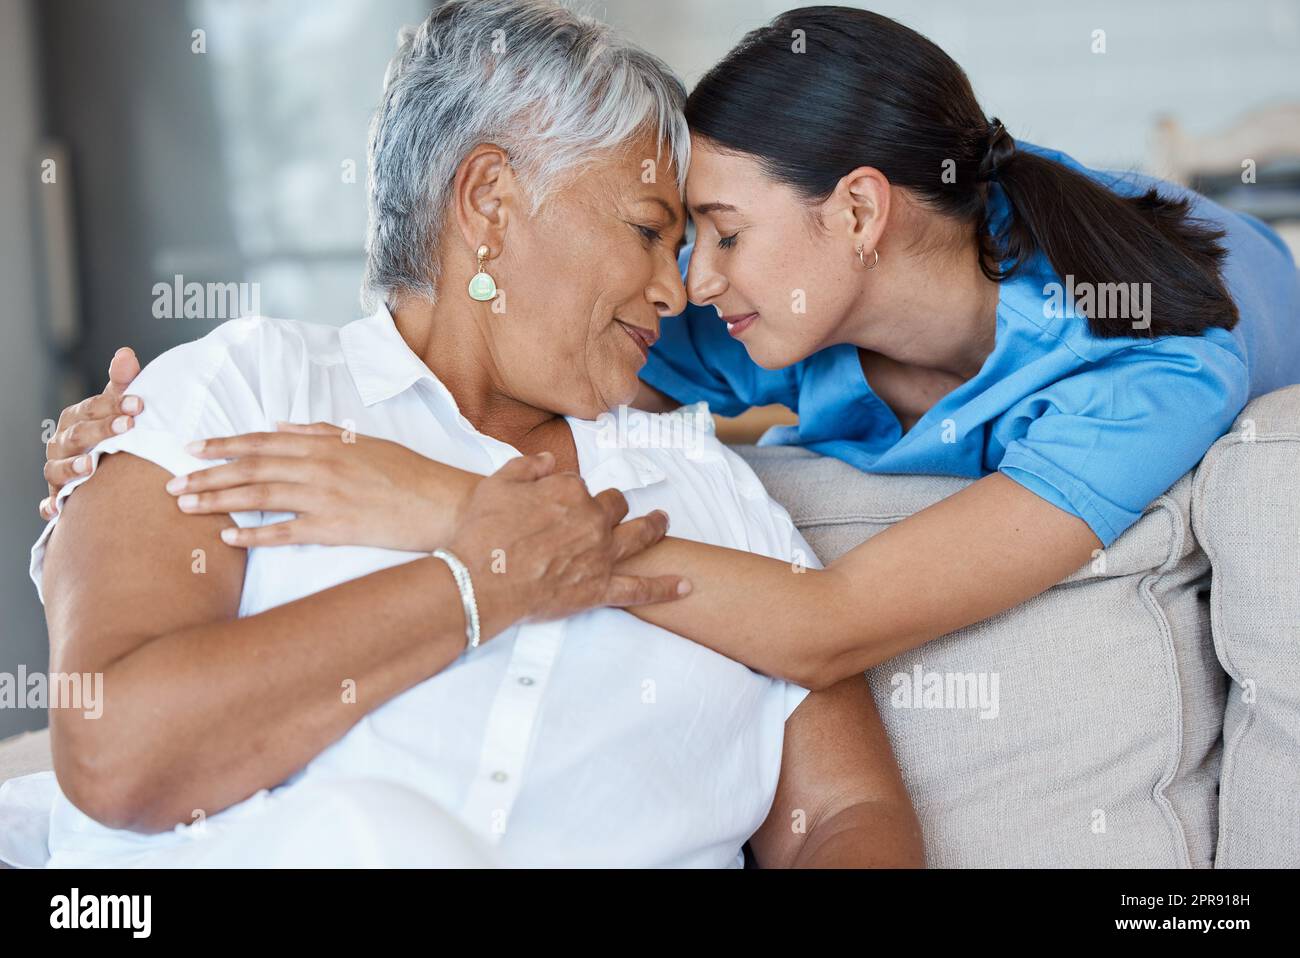 Alles, was Sie brauchen ... eine attraktive junge Krankenschwester, die einen intimen Moment mit ihrer älteren Patientin teilt. Stockfoto